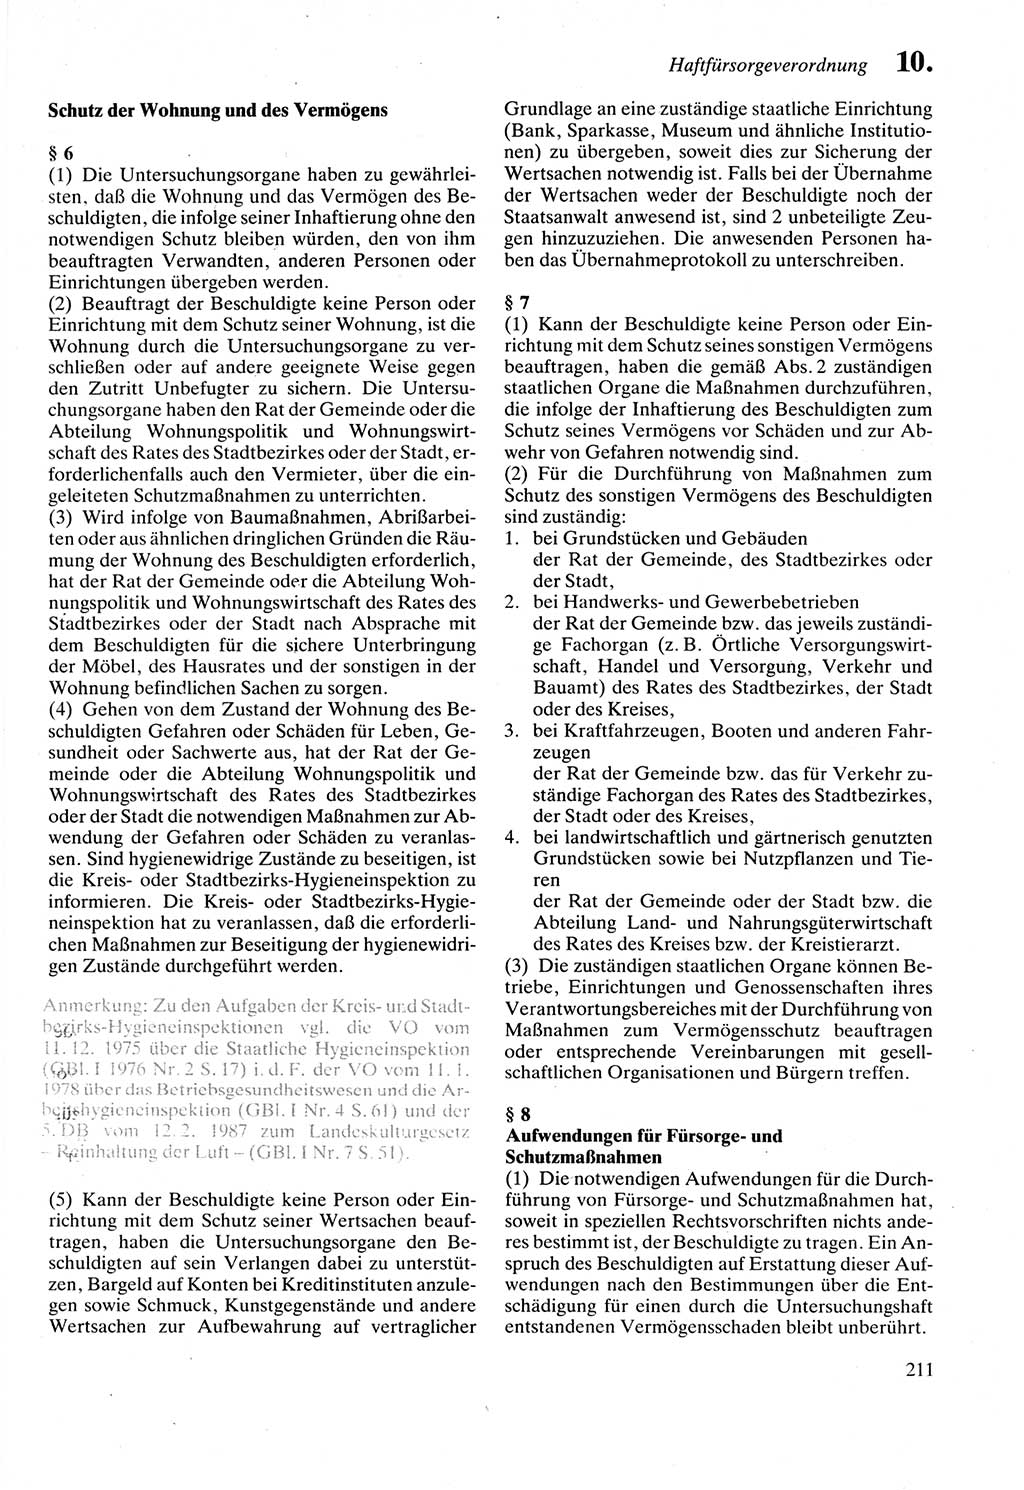 Strafprozeßordnung (StPO) der Deutschen Demokratischen Republik (DDR) sowie angrenzende Gesetze und Bestimmungen 1987, Seite 211 (StPO DDR Ges. Best. 1987, S. 211)